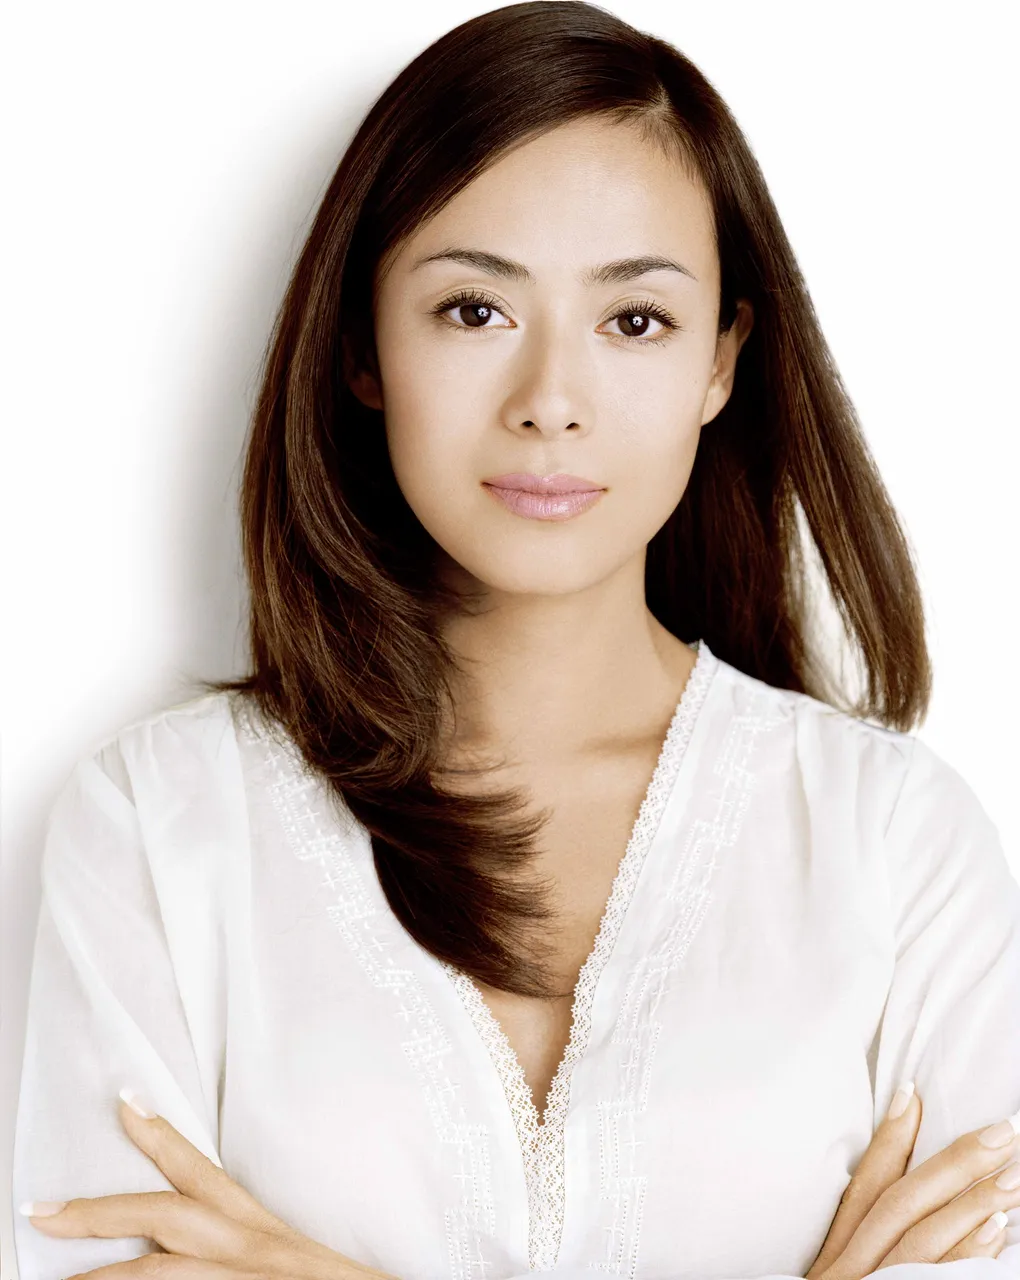 後藤久美子のプロフィール・画像・写真 | WEBザテレビジョン